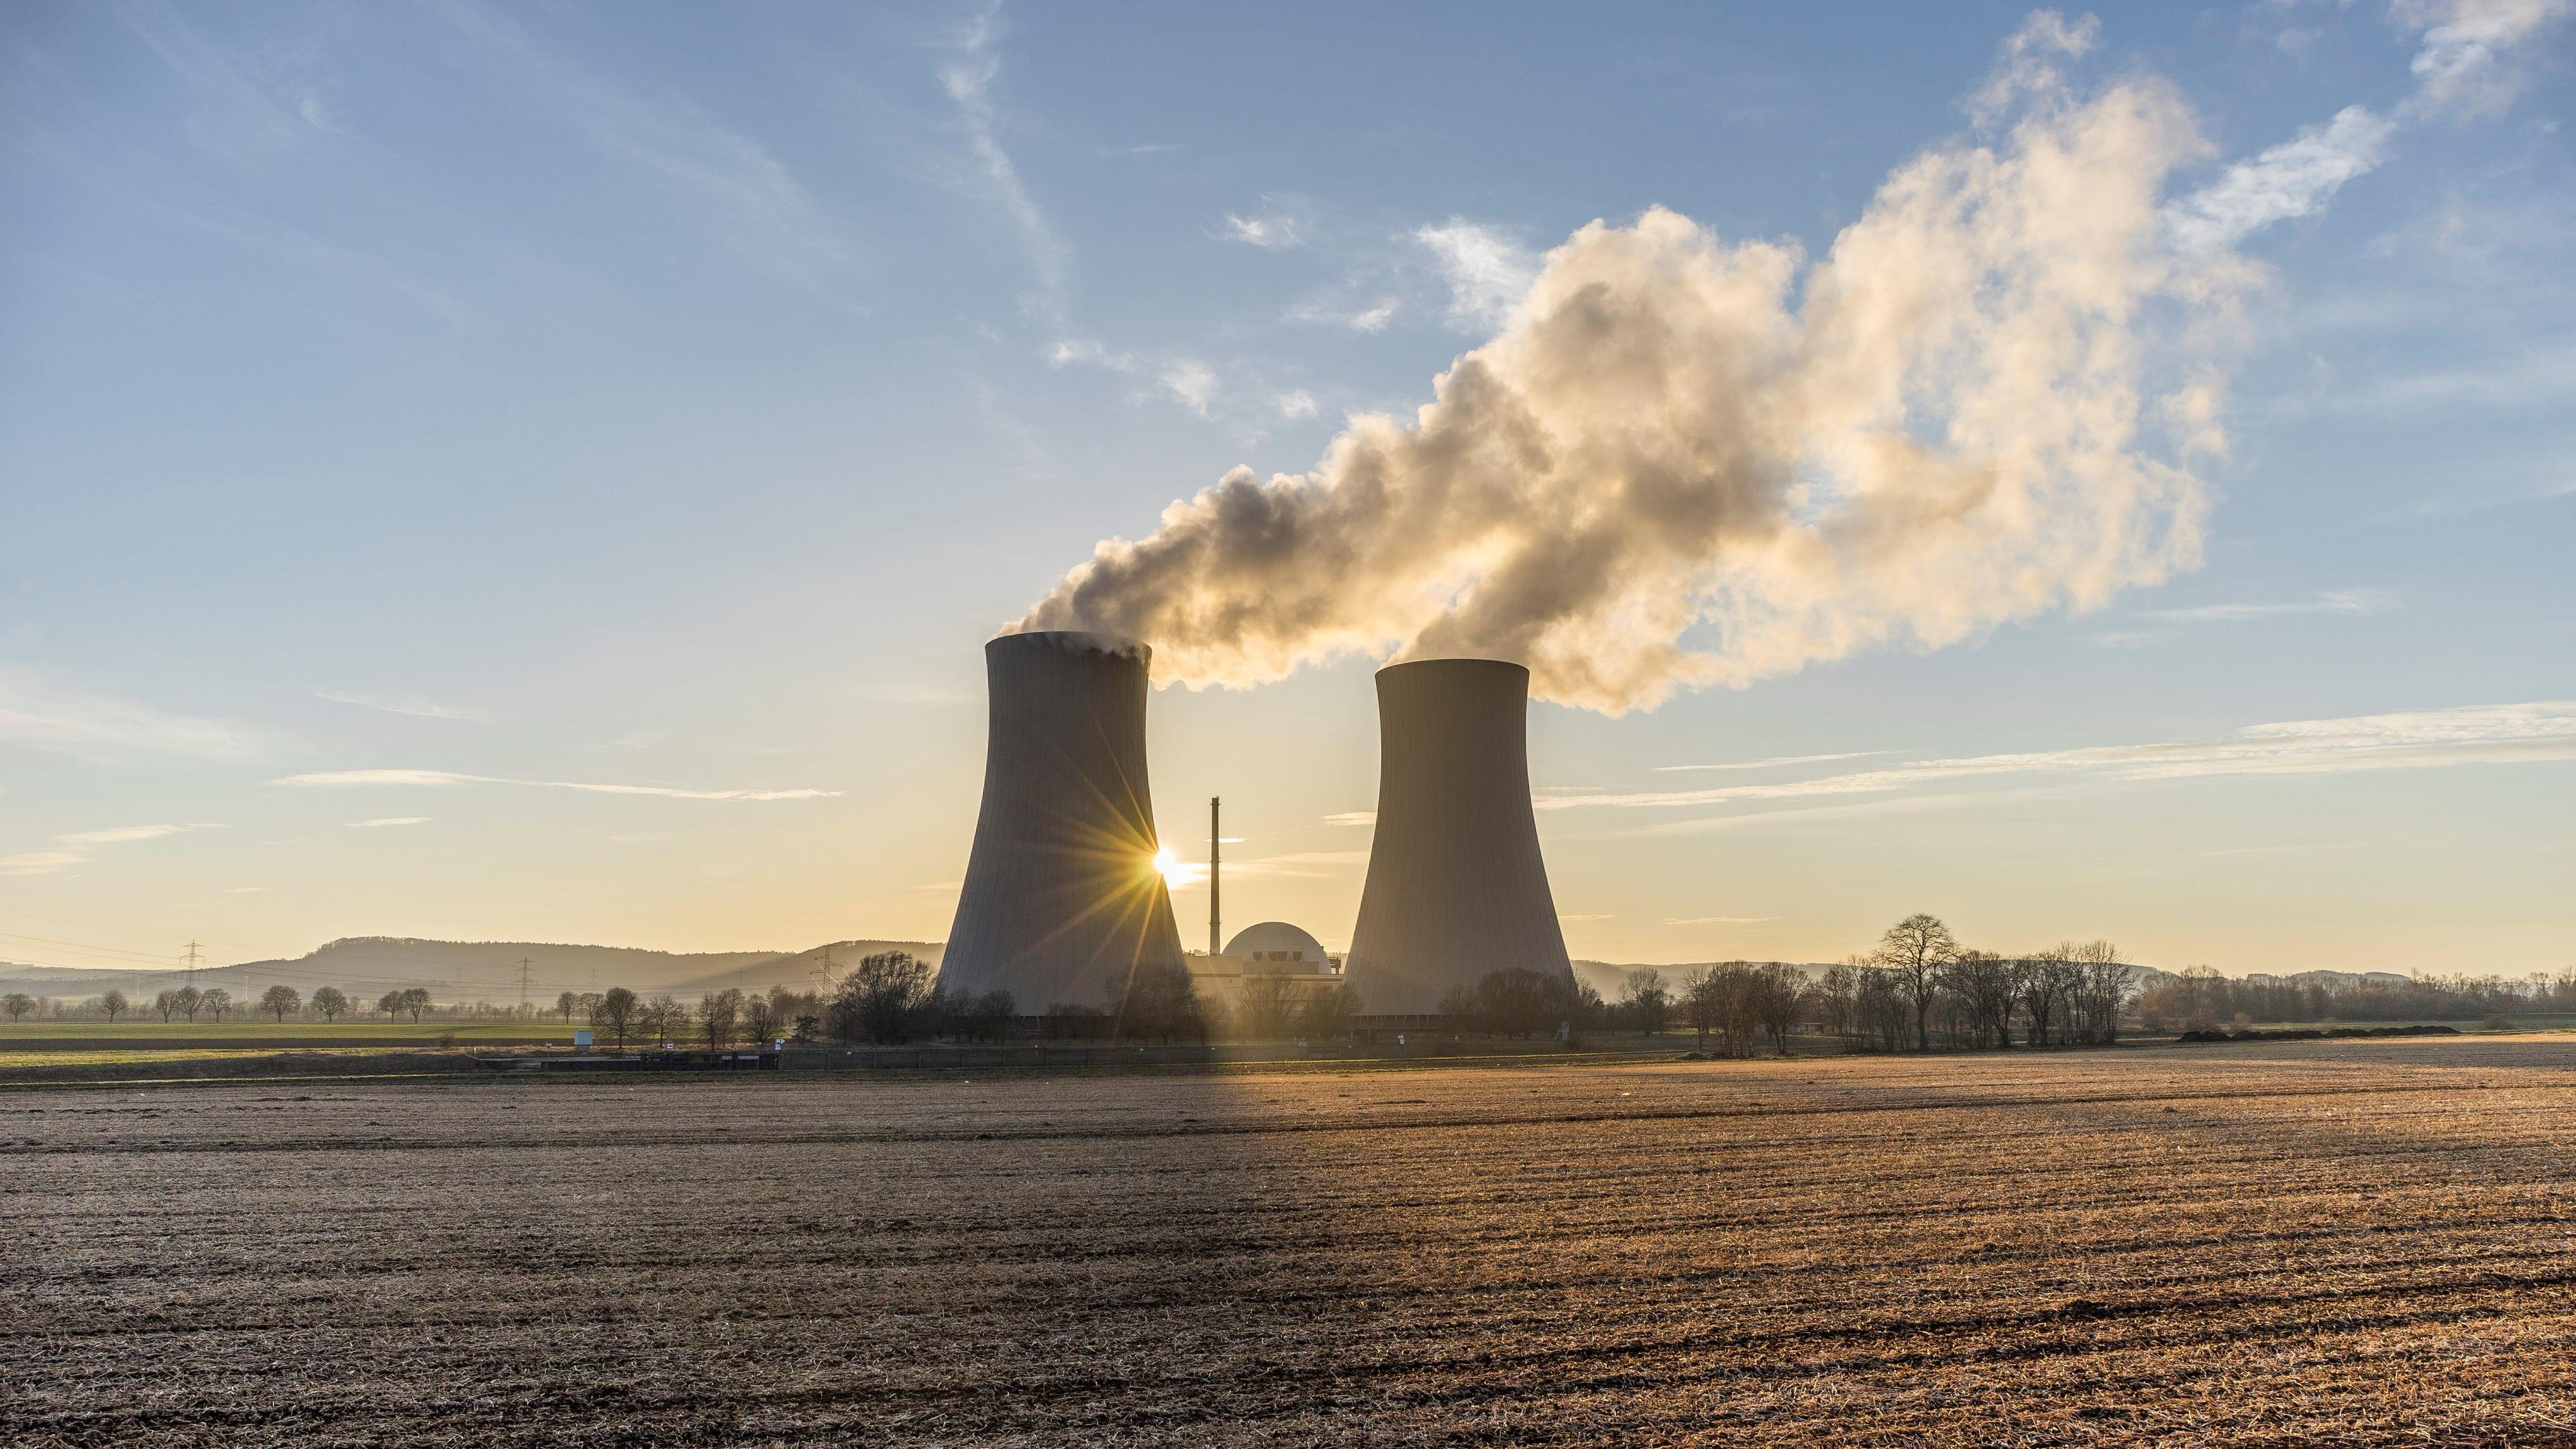 "Strahlendes Comeback - Rettet Atomkraft das Klima?": Landschaftsaufnahme vom Atomkraftwerk Grohnde in Niedersachsen bei Sonnenaufgang.